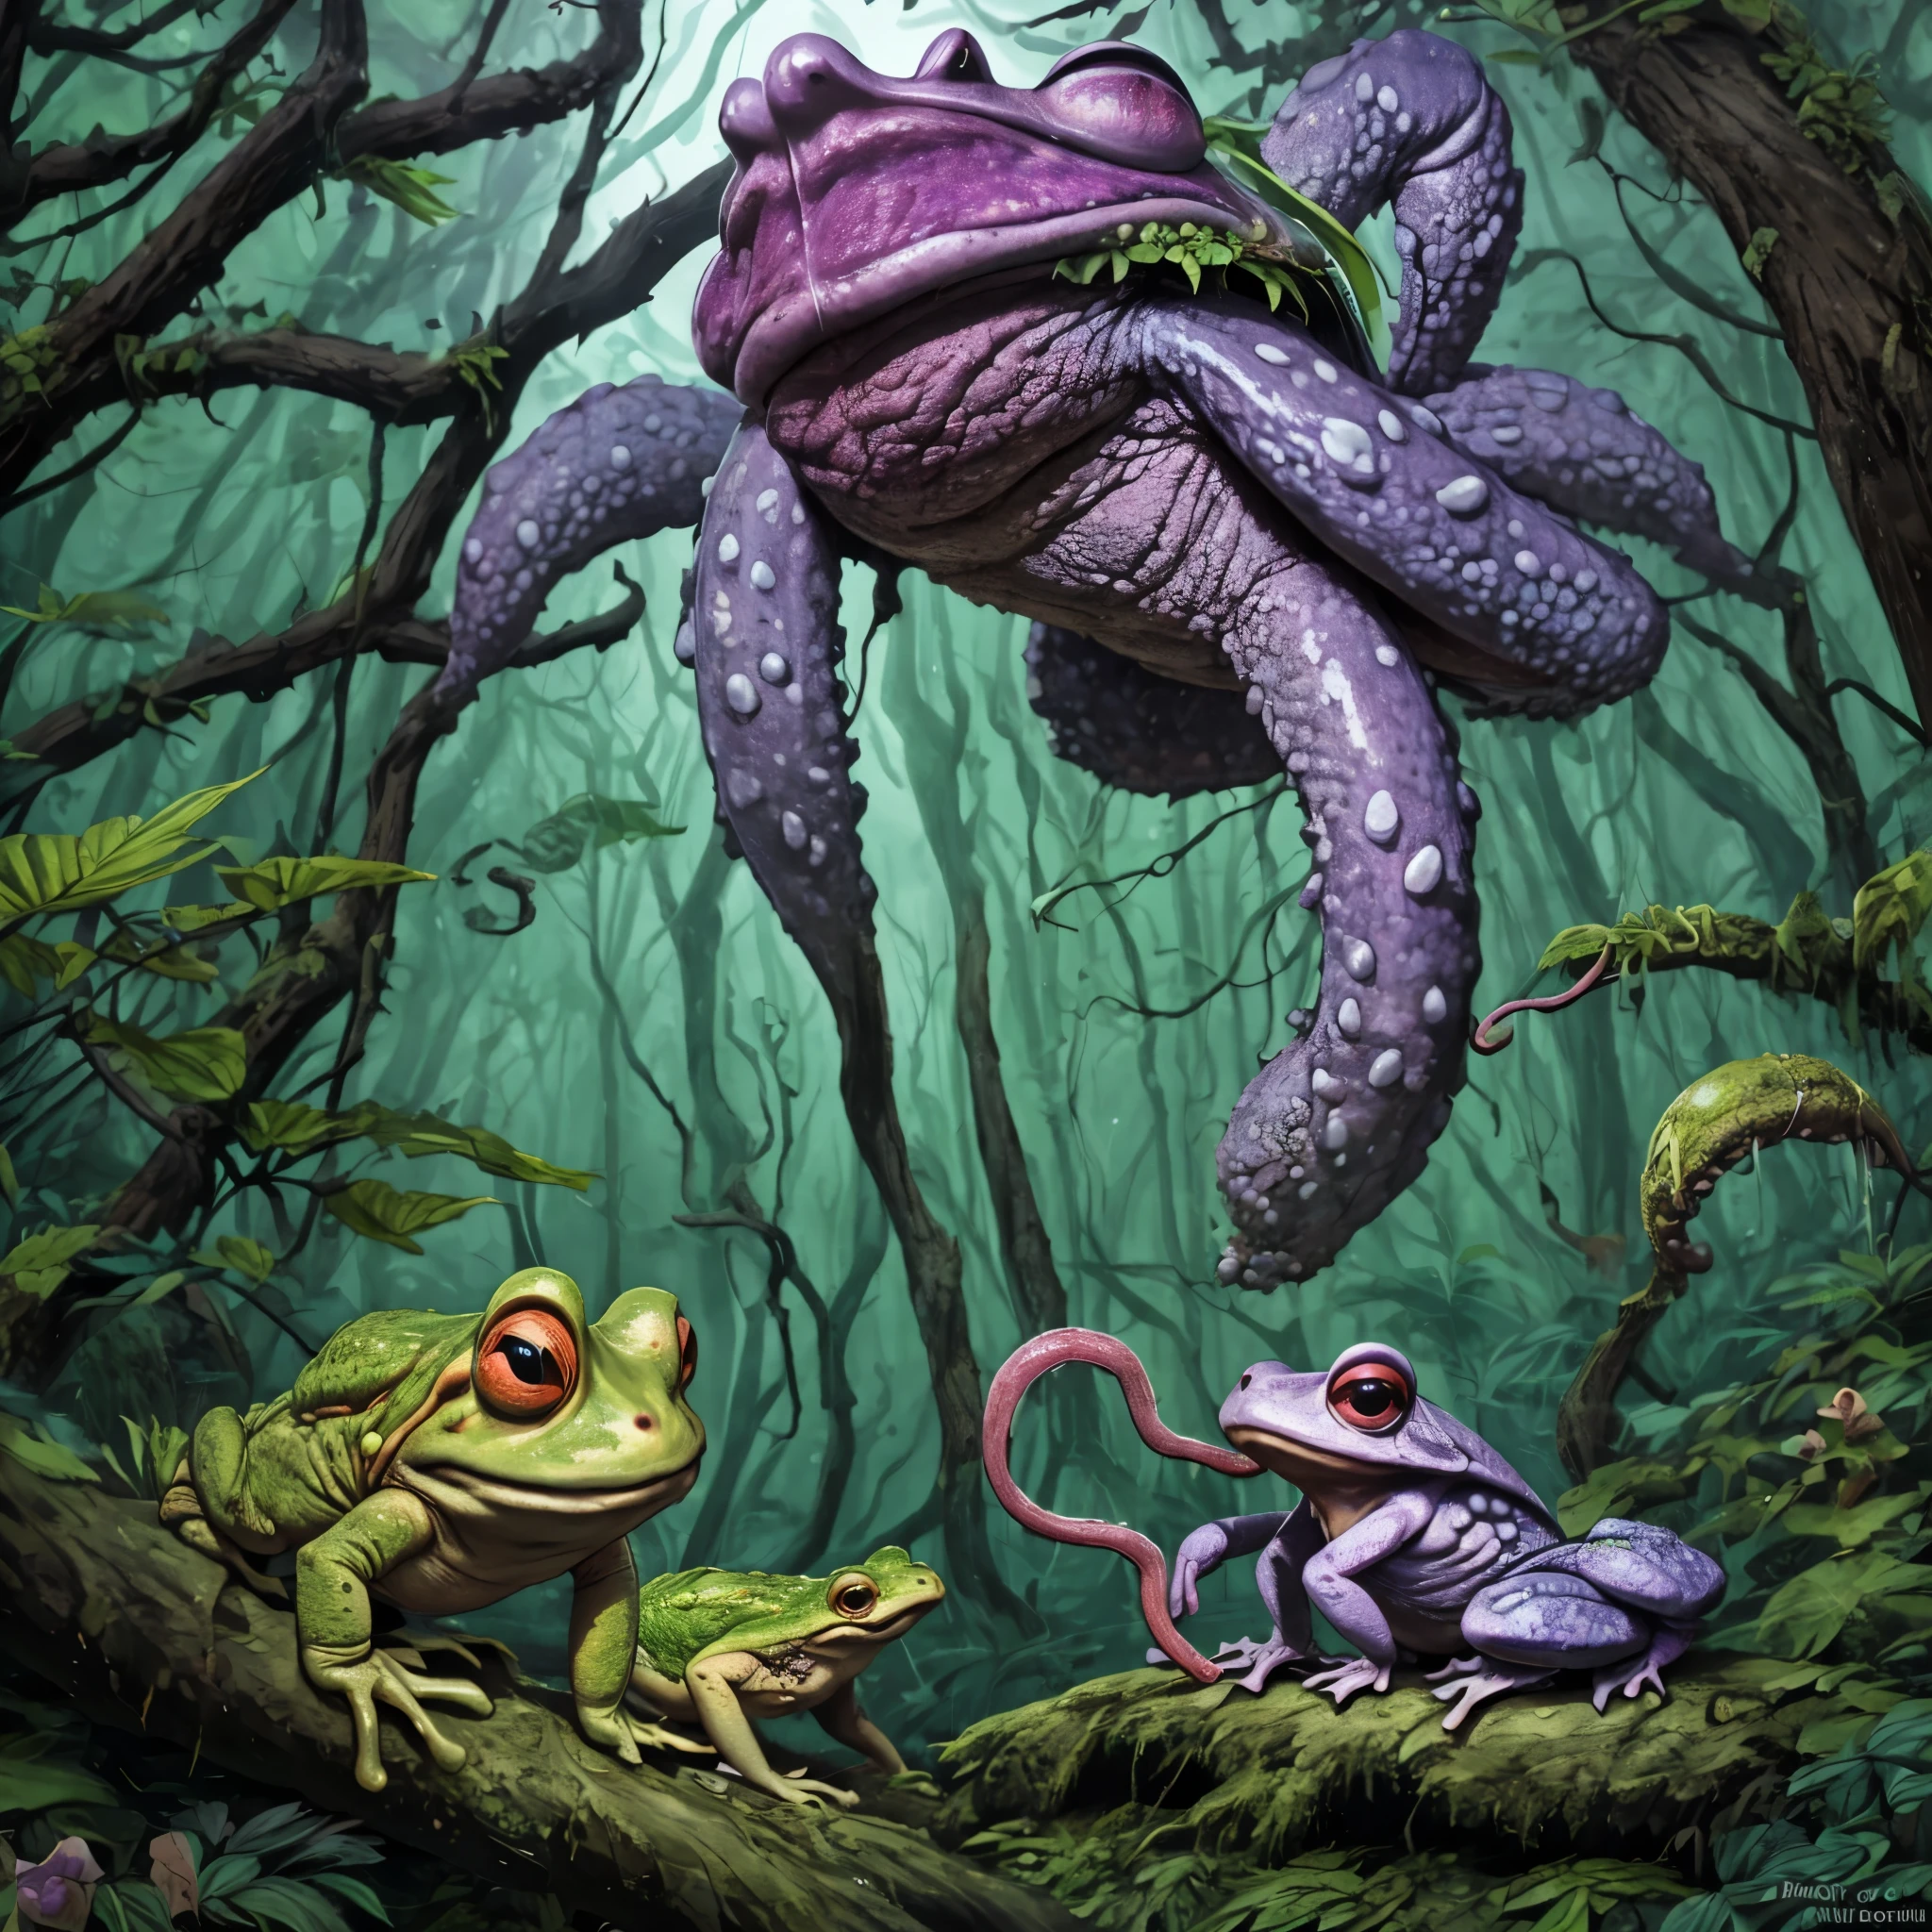 (жуткая жаба, громадный, ярко окрашенный, щупальца языка) пробирается через древний лес